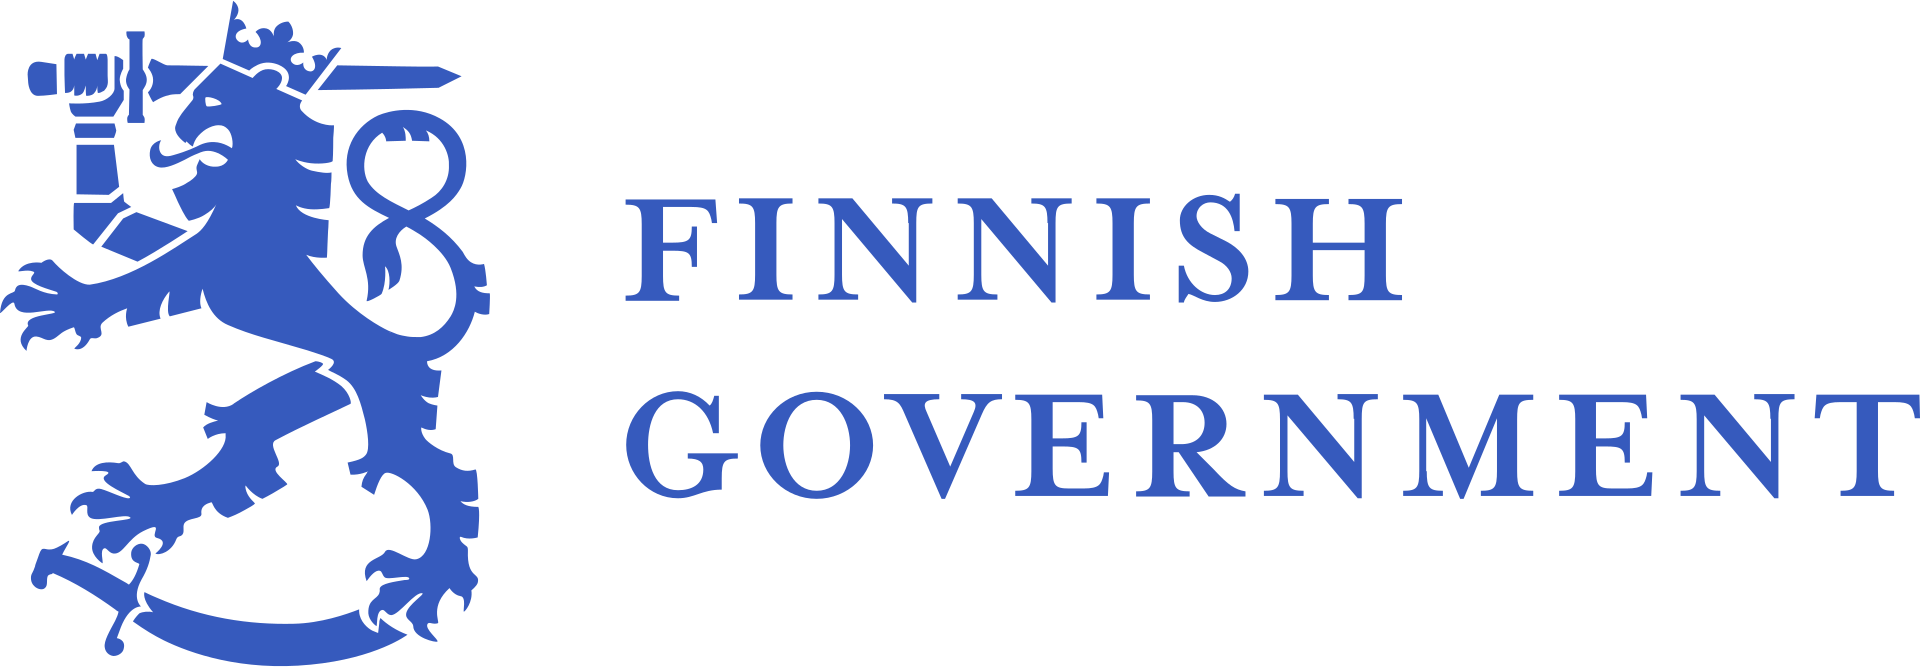 Государственный совет Финляндии - органы государственной власти